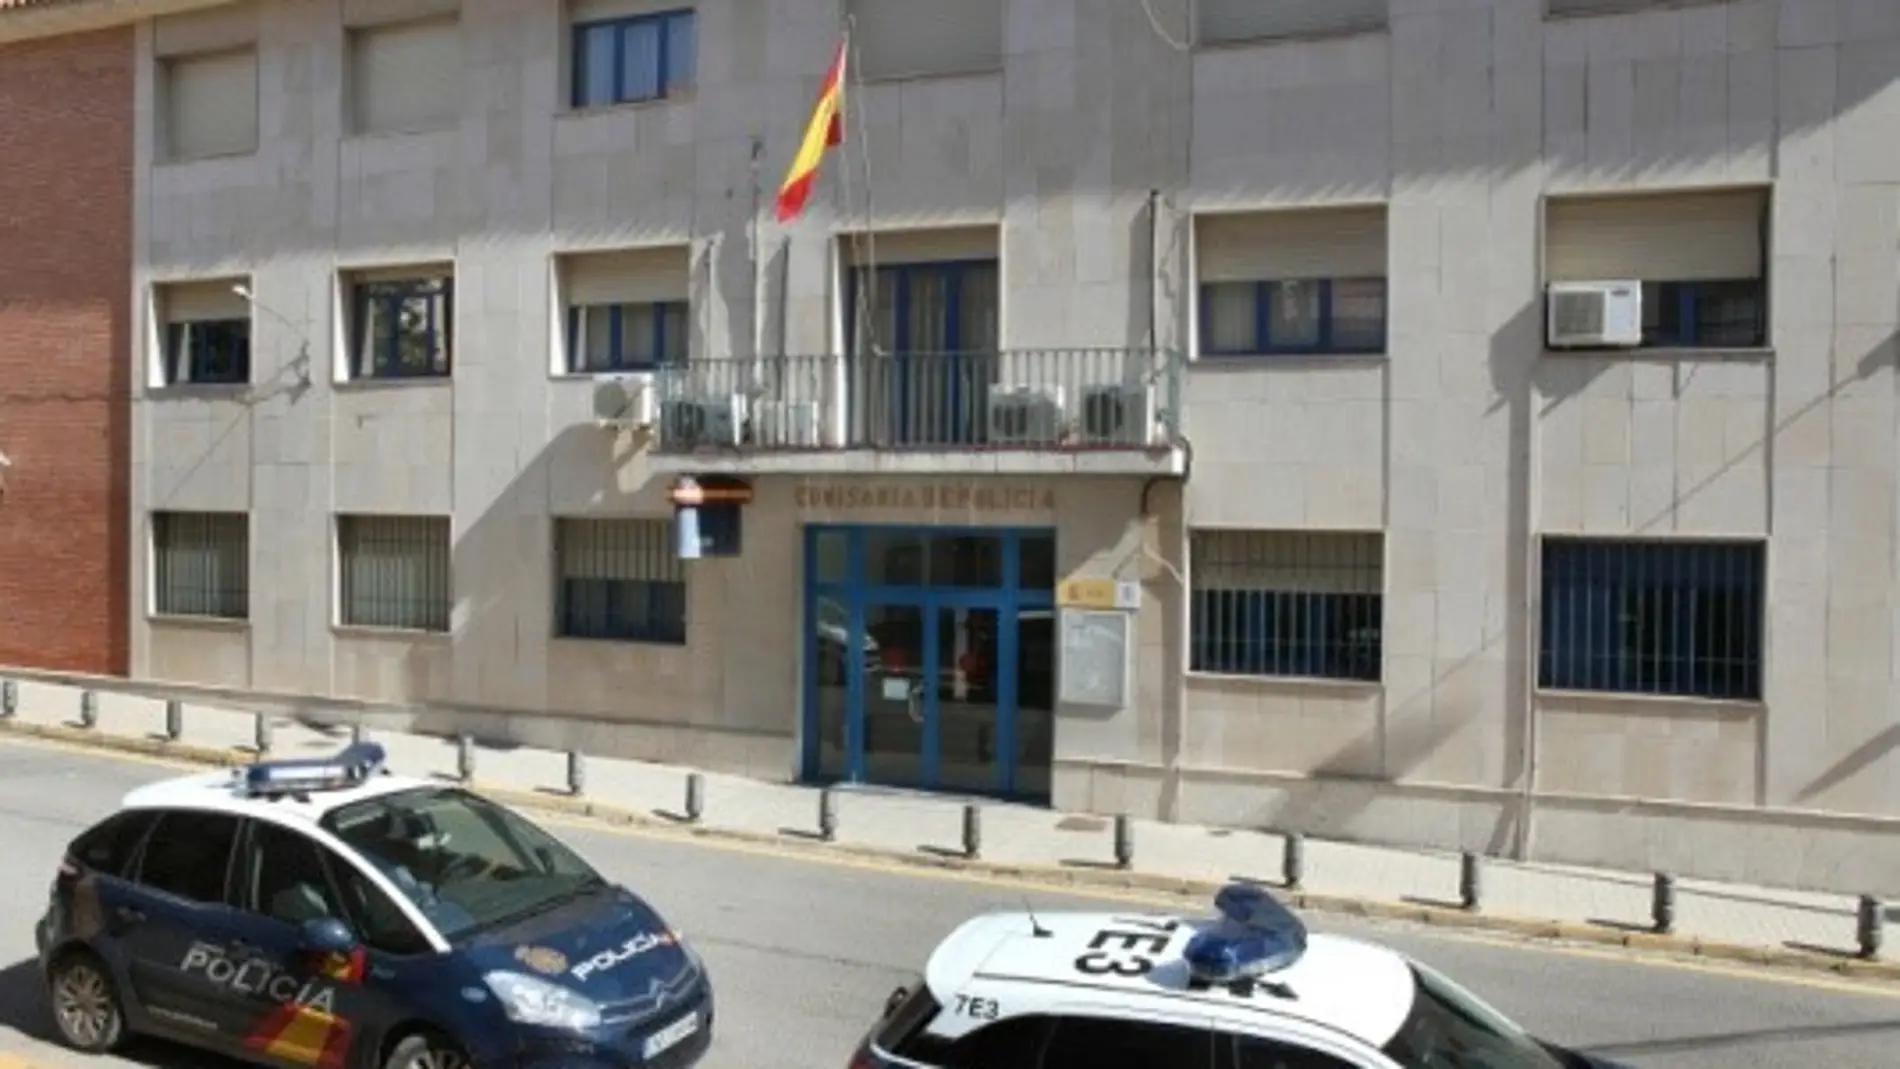 Comisaría de Teruel